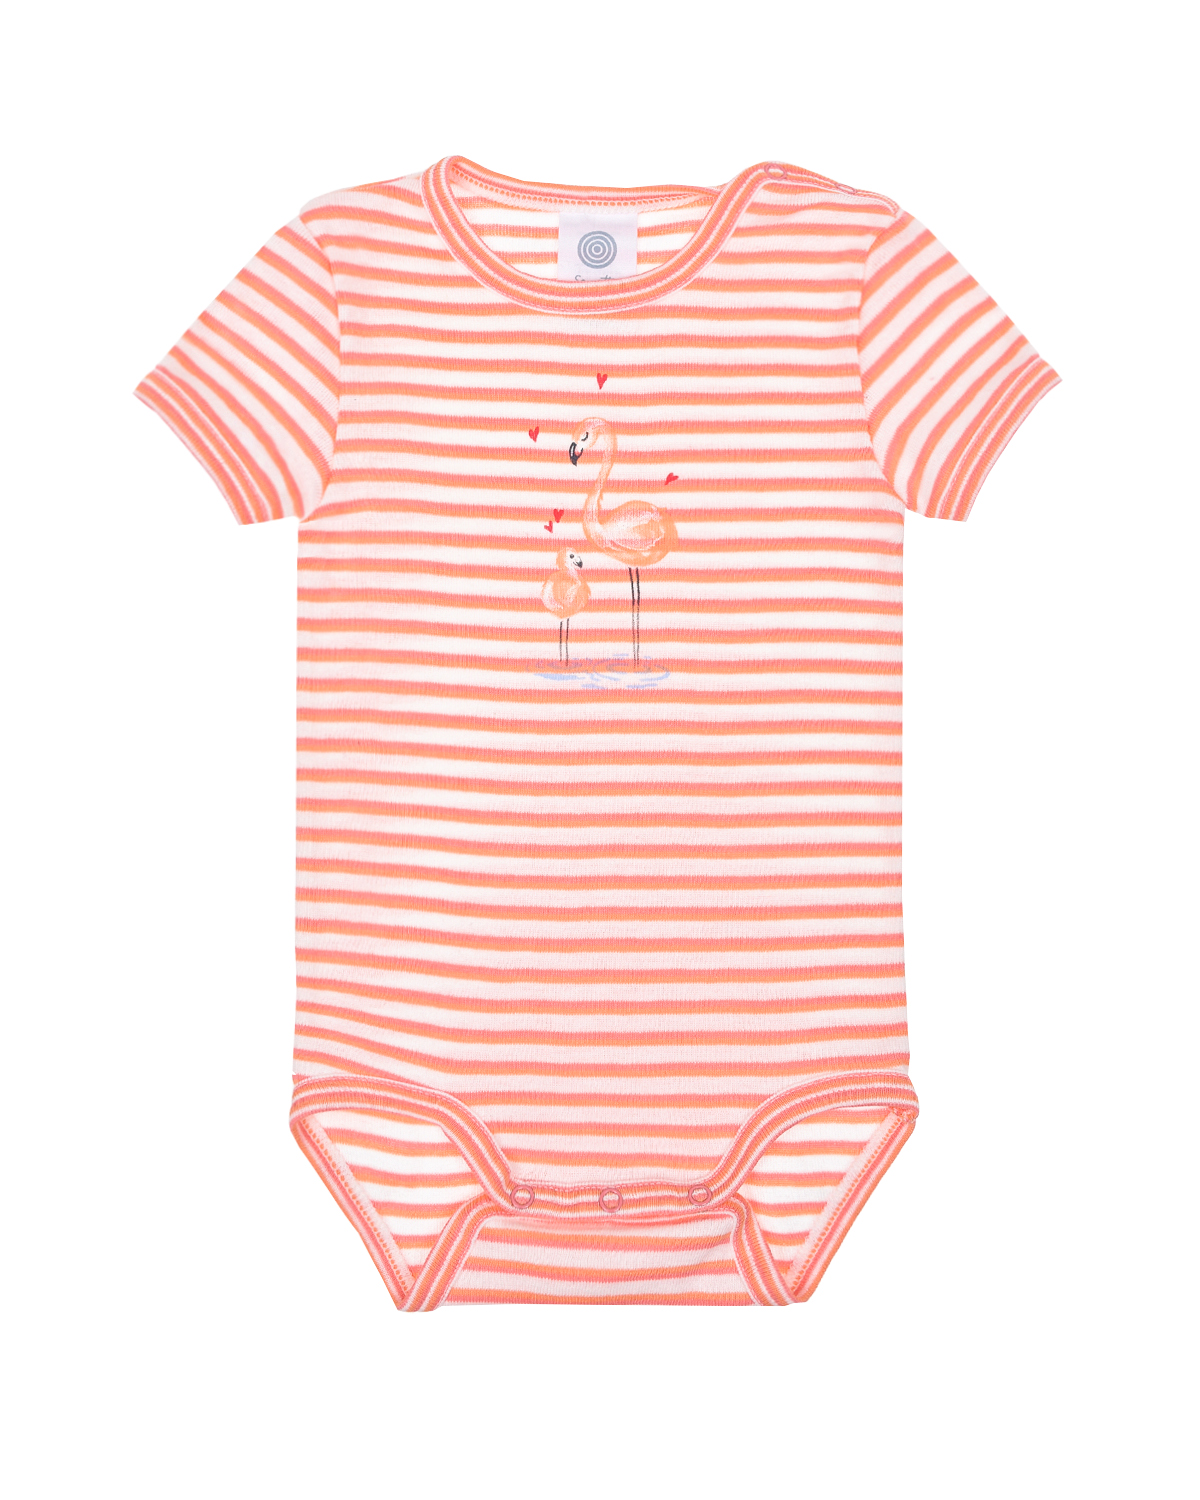 Боди в полоску с принтом "Фламинго" Sanetta детское, размер 56, цвет оранжевый - фото 1